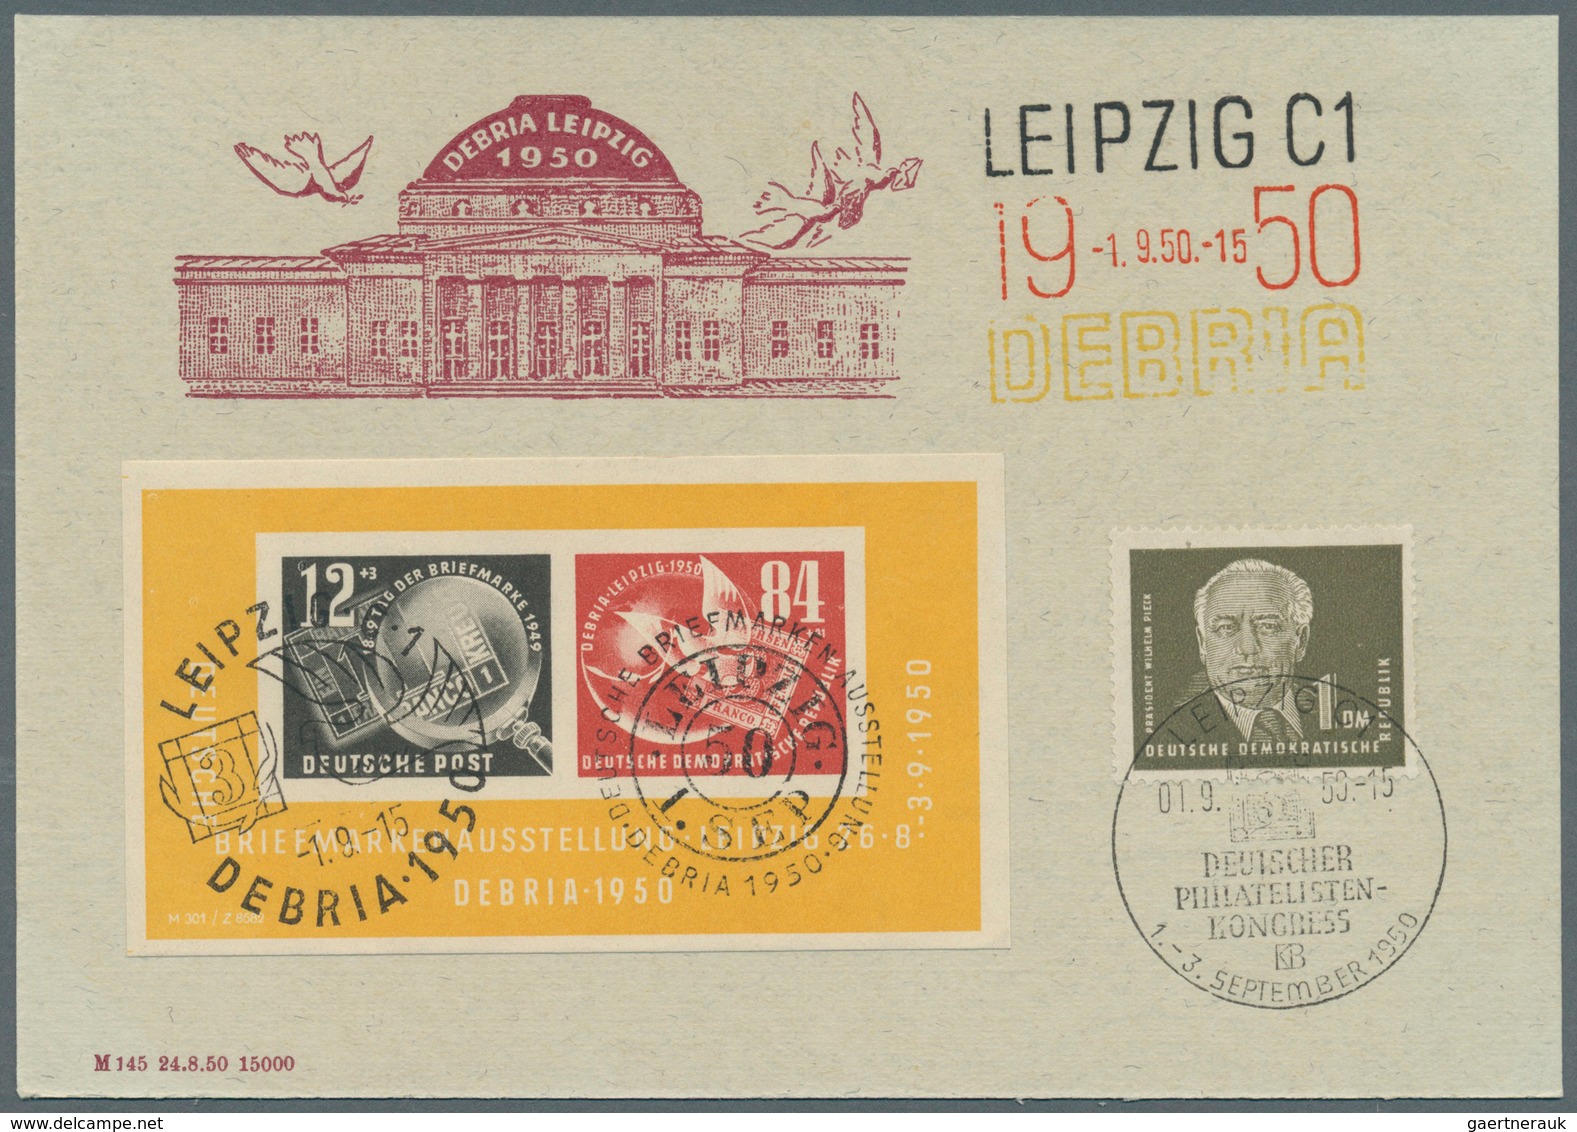 25416 Thematik: Philatelie - Tag der Briefmarke / stamp days: Ab 1897, Deutschland, Tag der Briefmarke, Ph